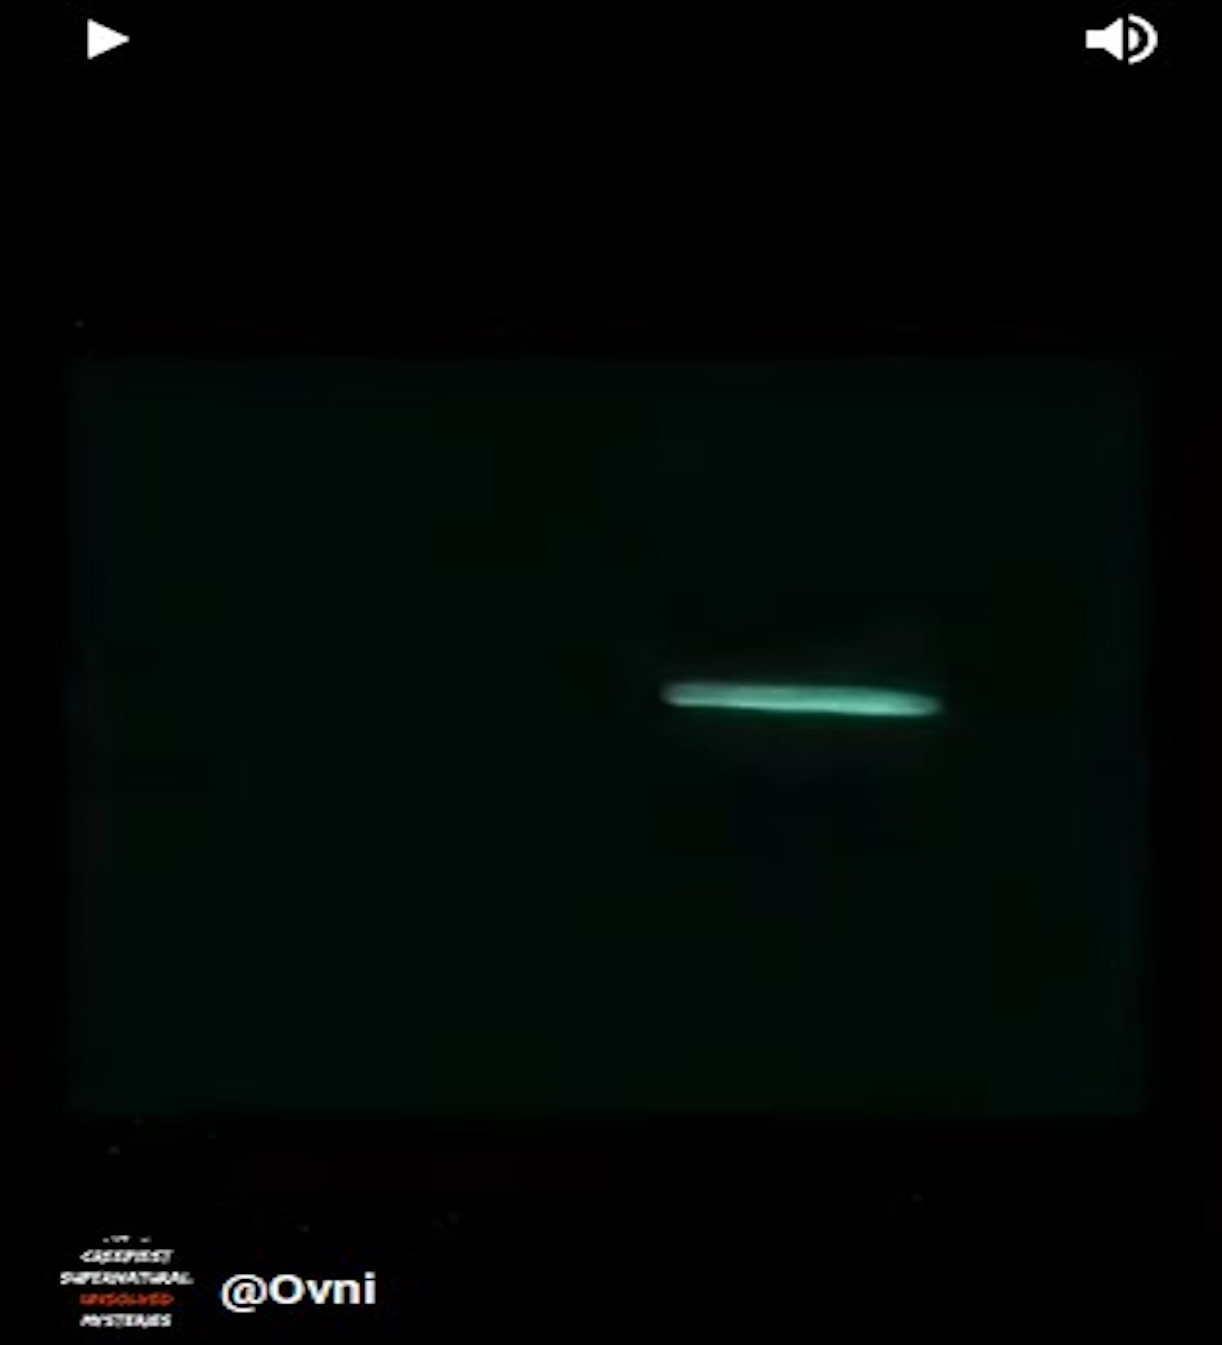 Imagenes de Ovni en forma de tubo que grabado por una camara vision noturna